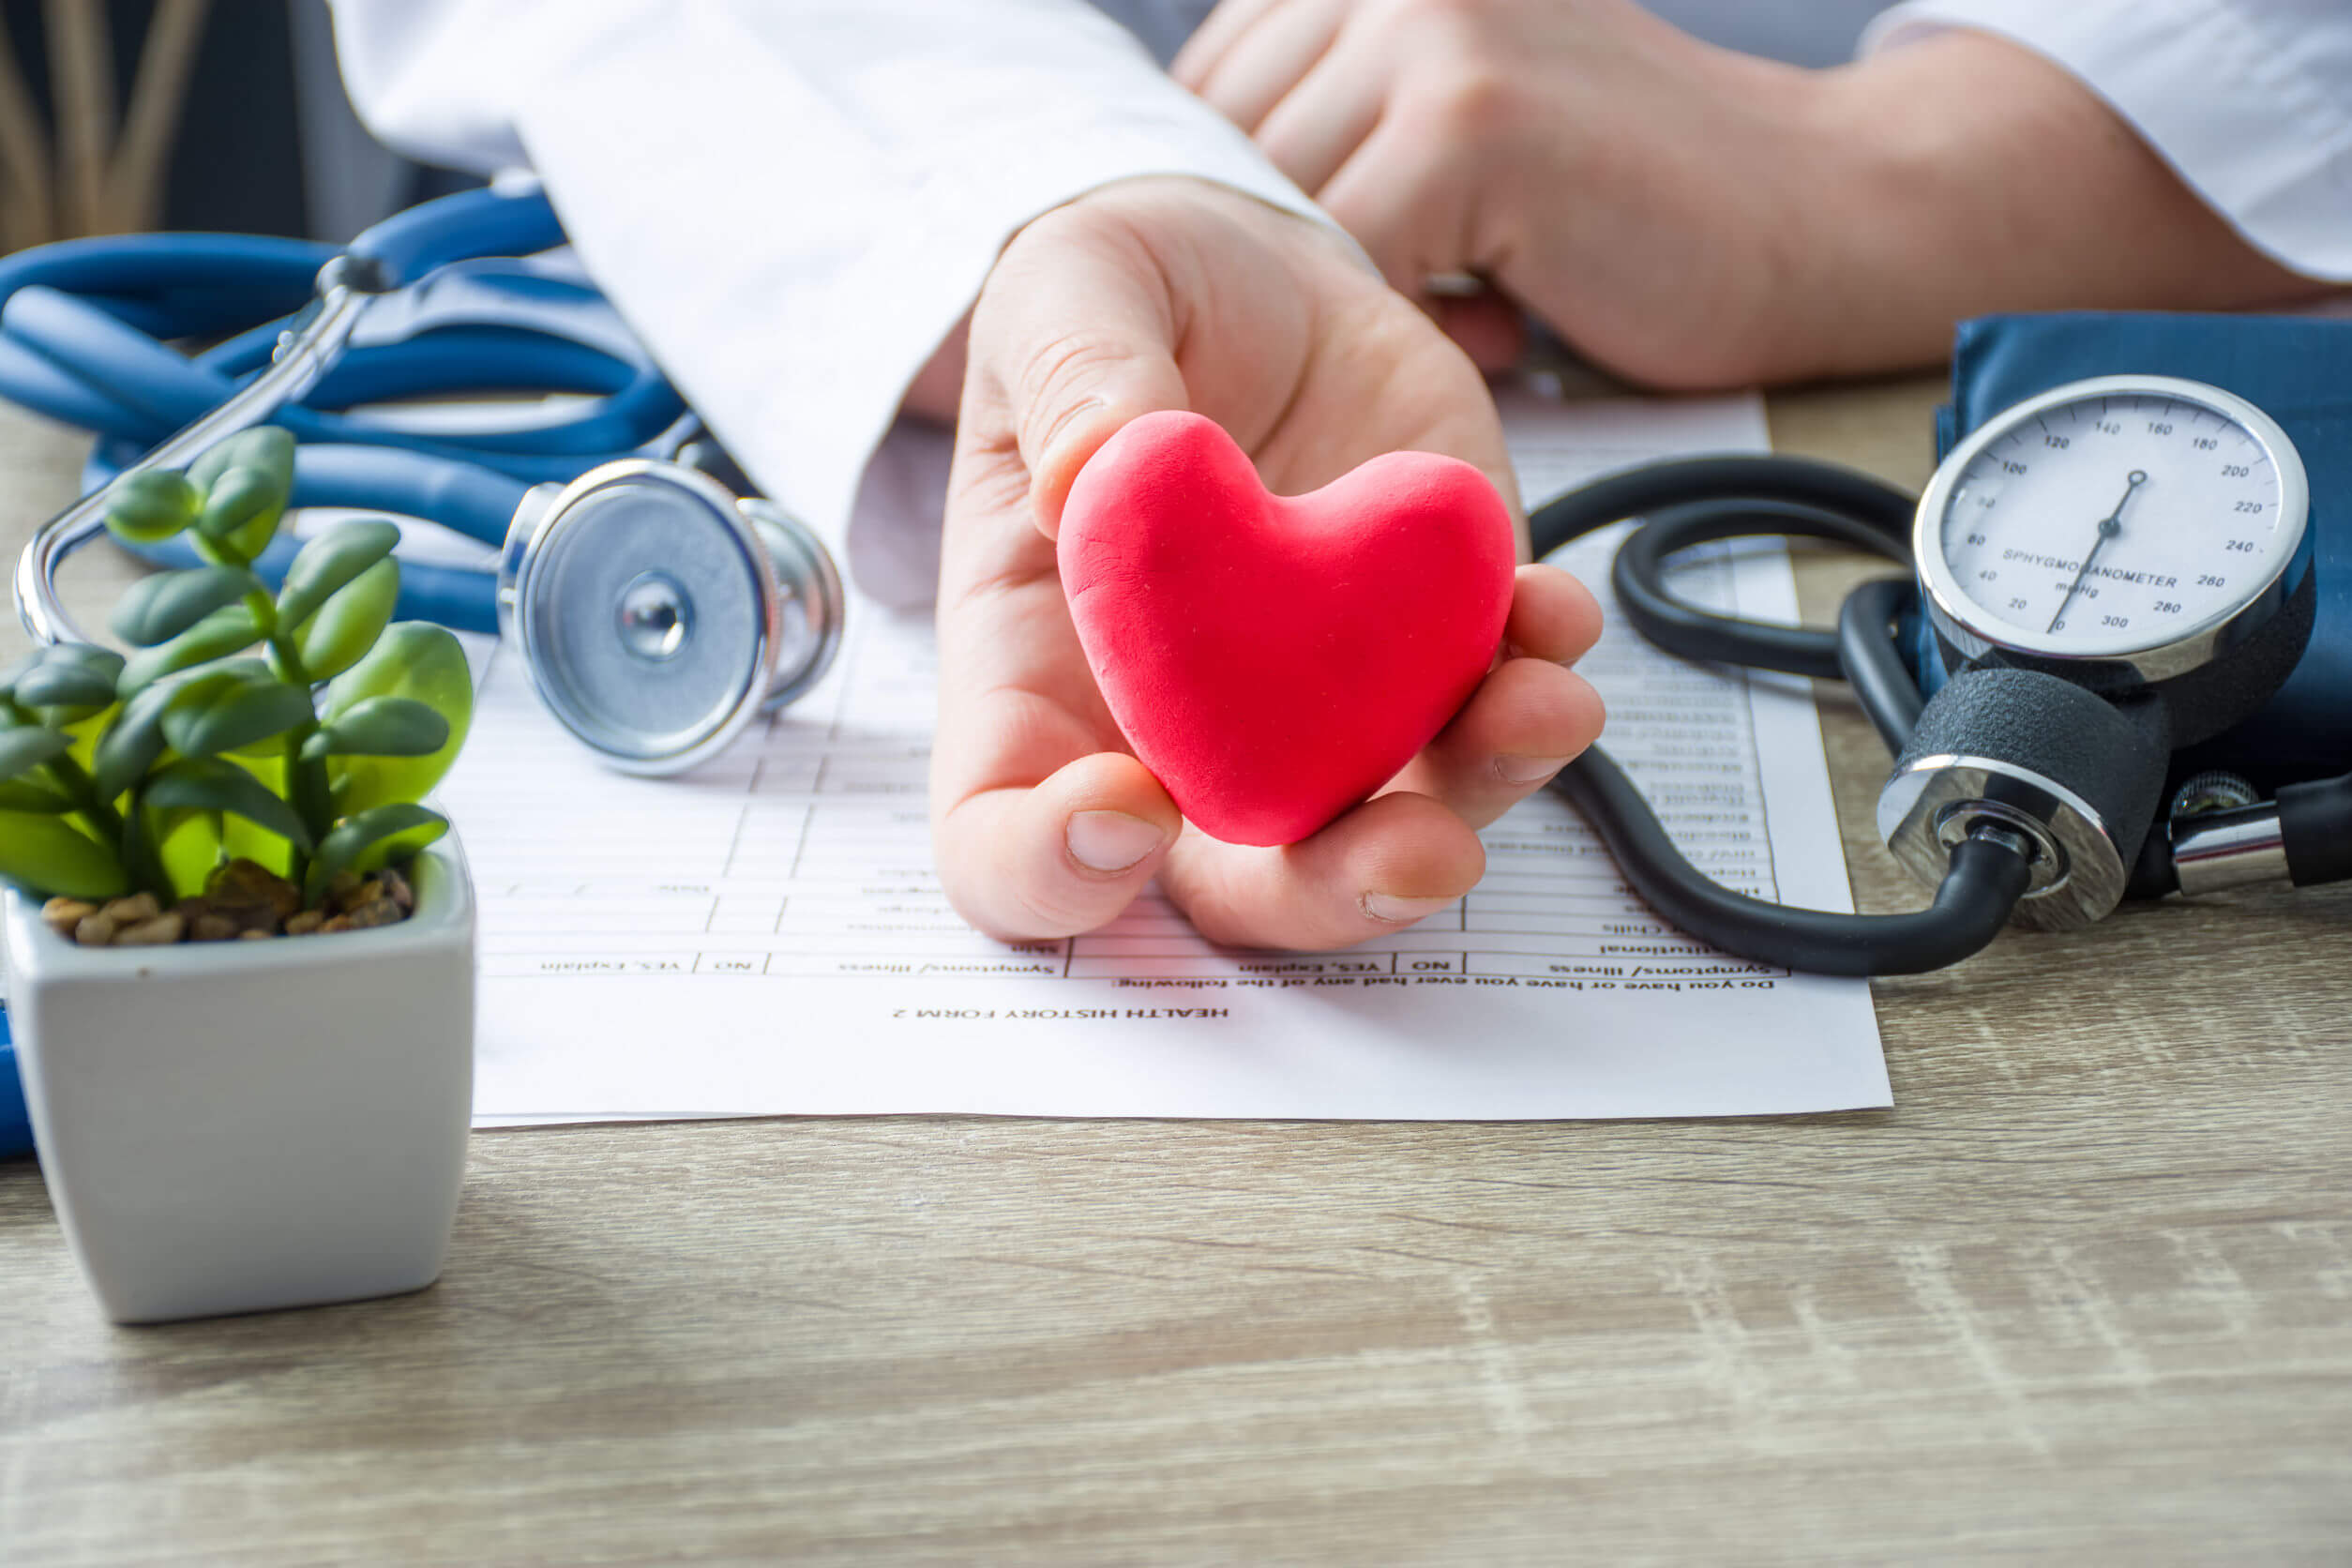 Insuficiencia cardíaca: síntomas, causas y tratamiento